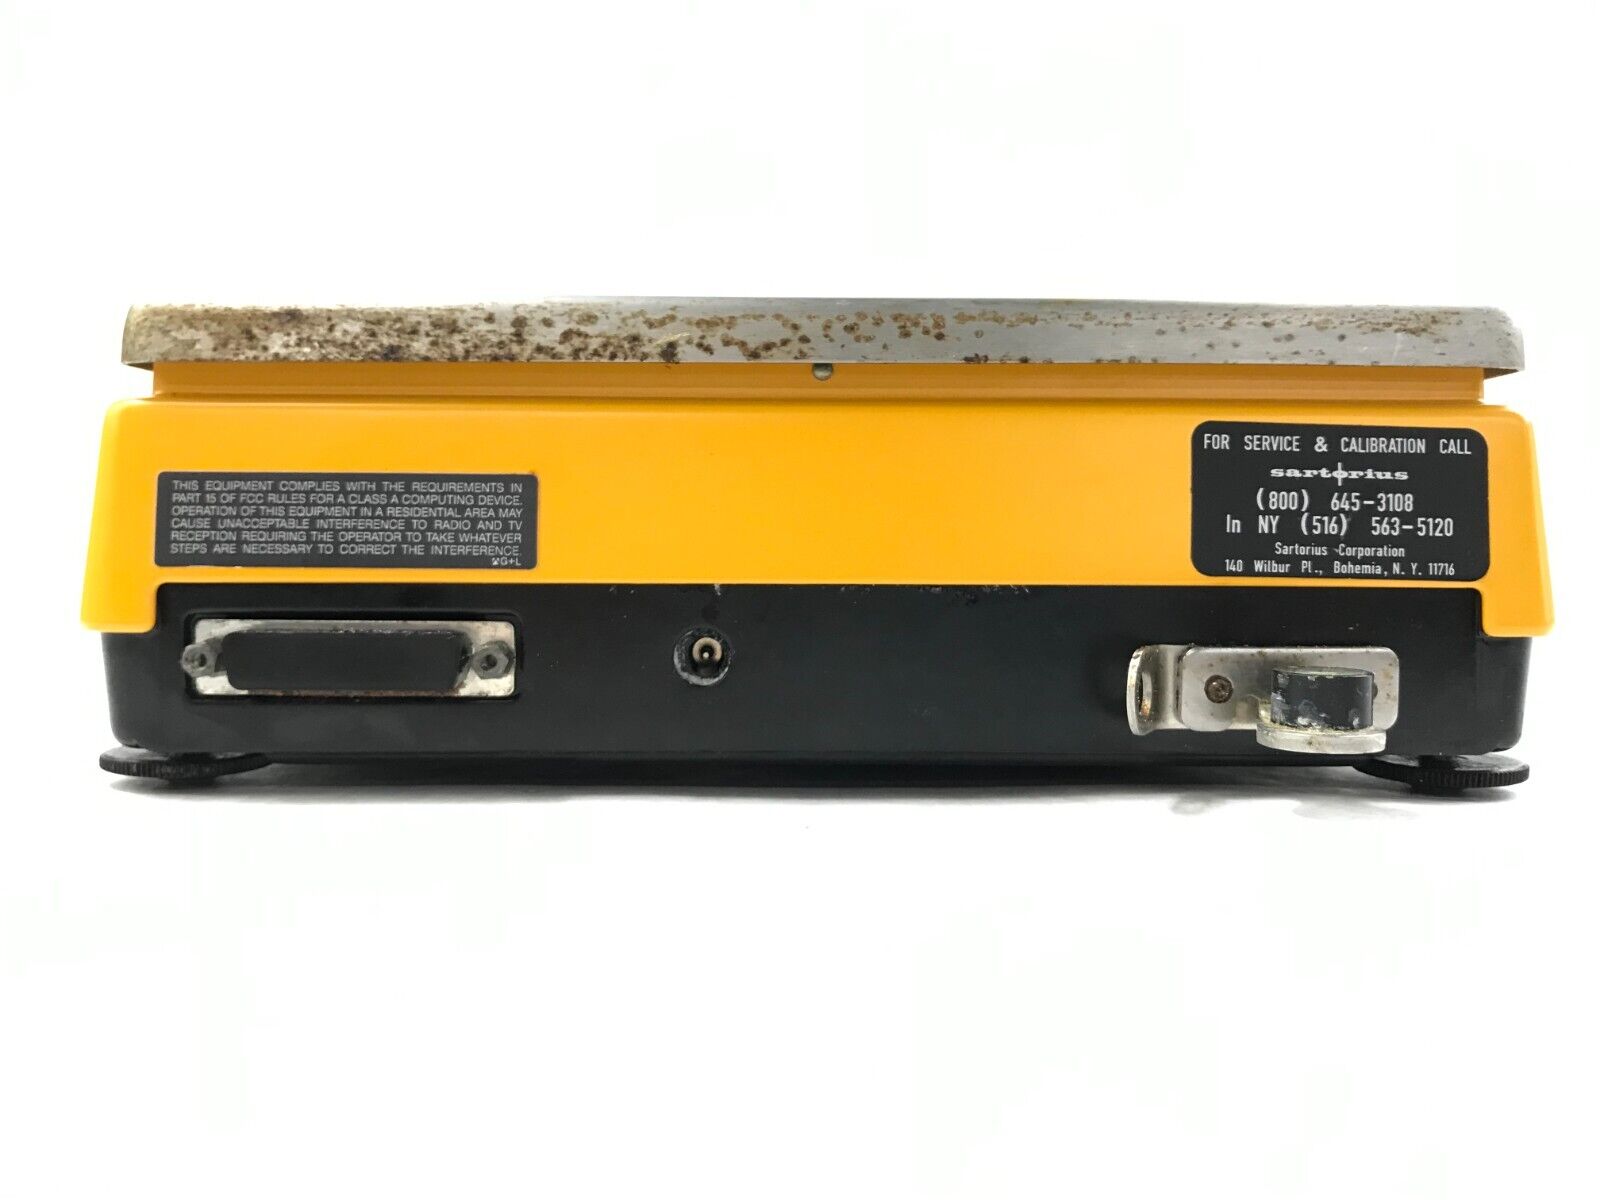 Sartorius MC 1 LC 4800 P Scale, AC Adapter Included